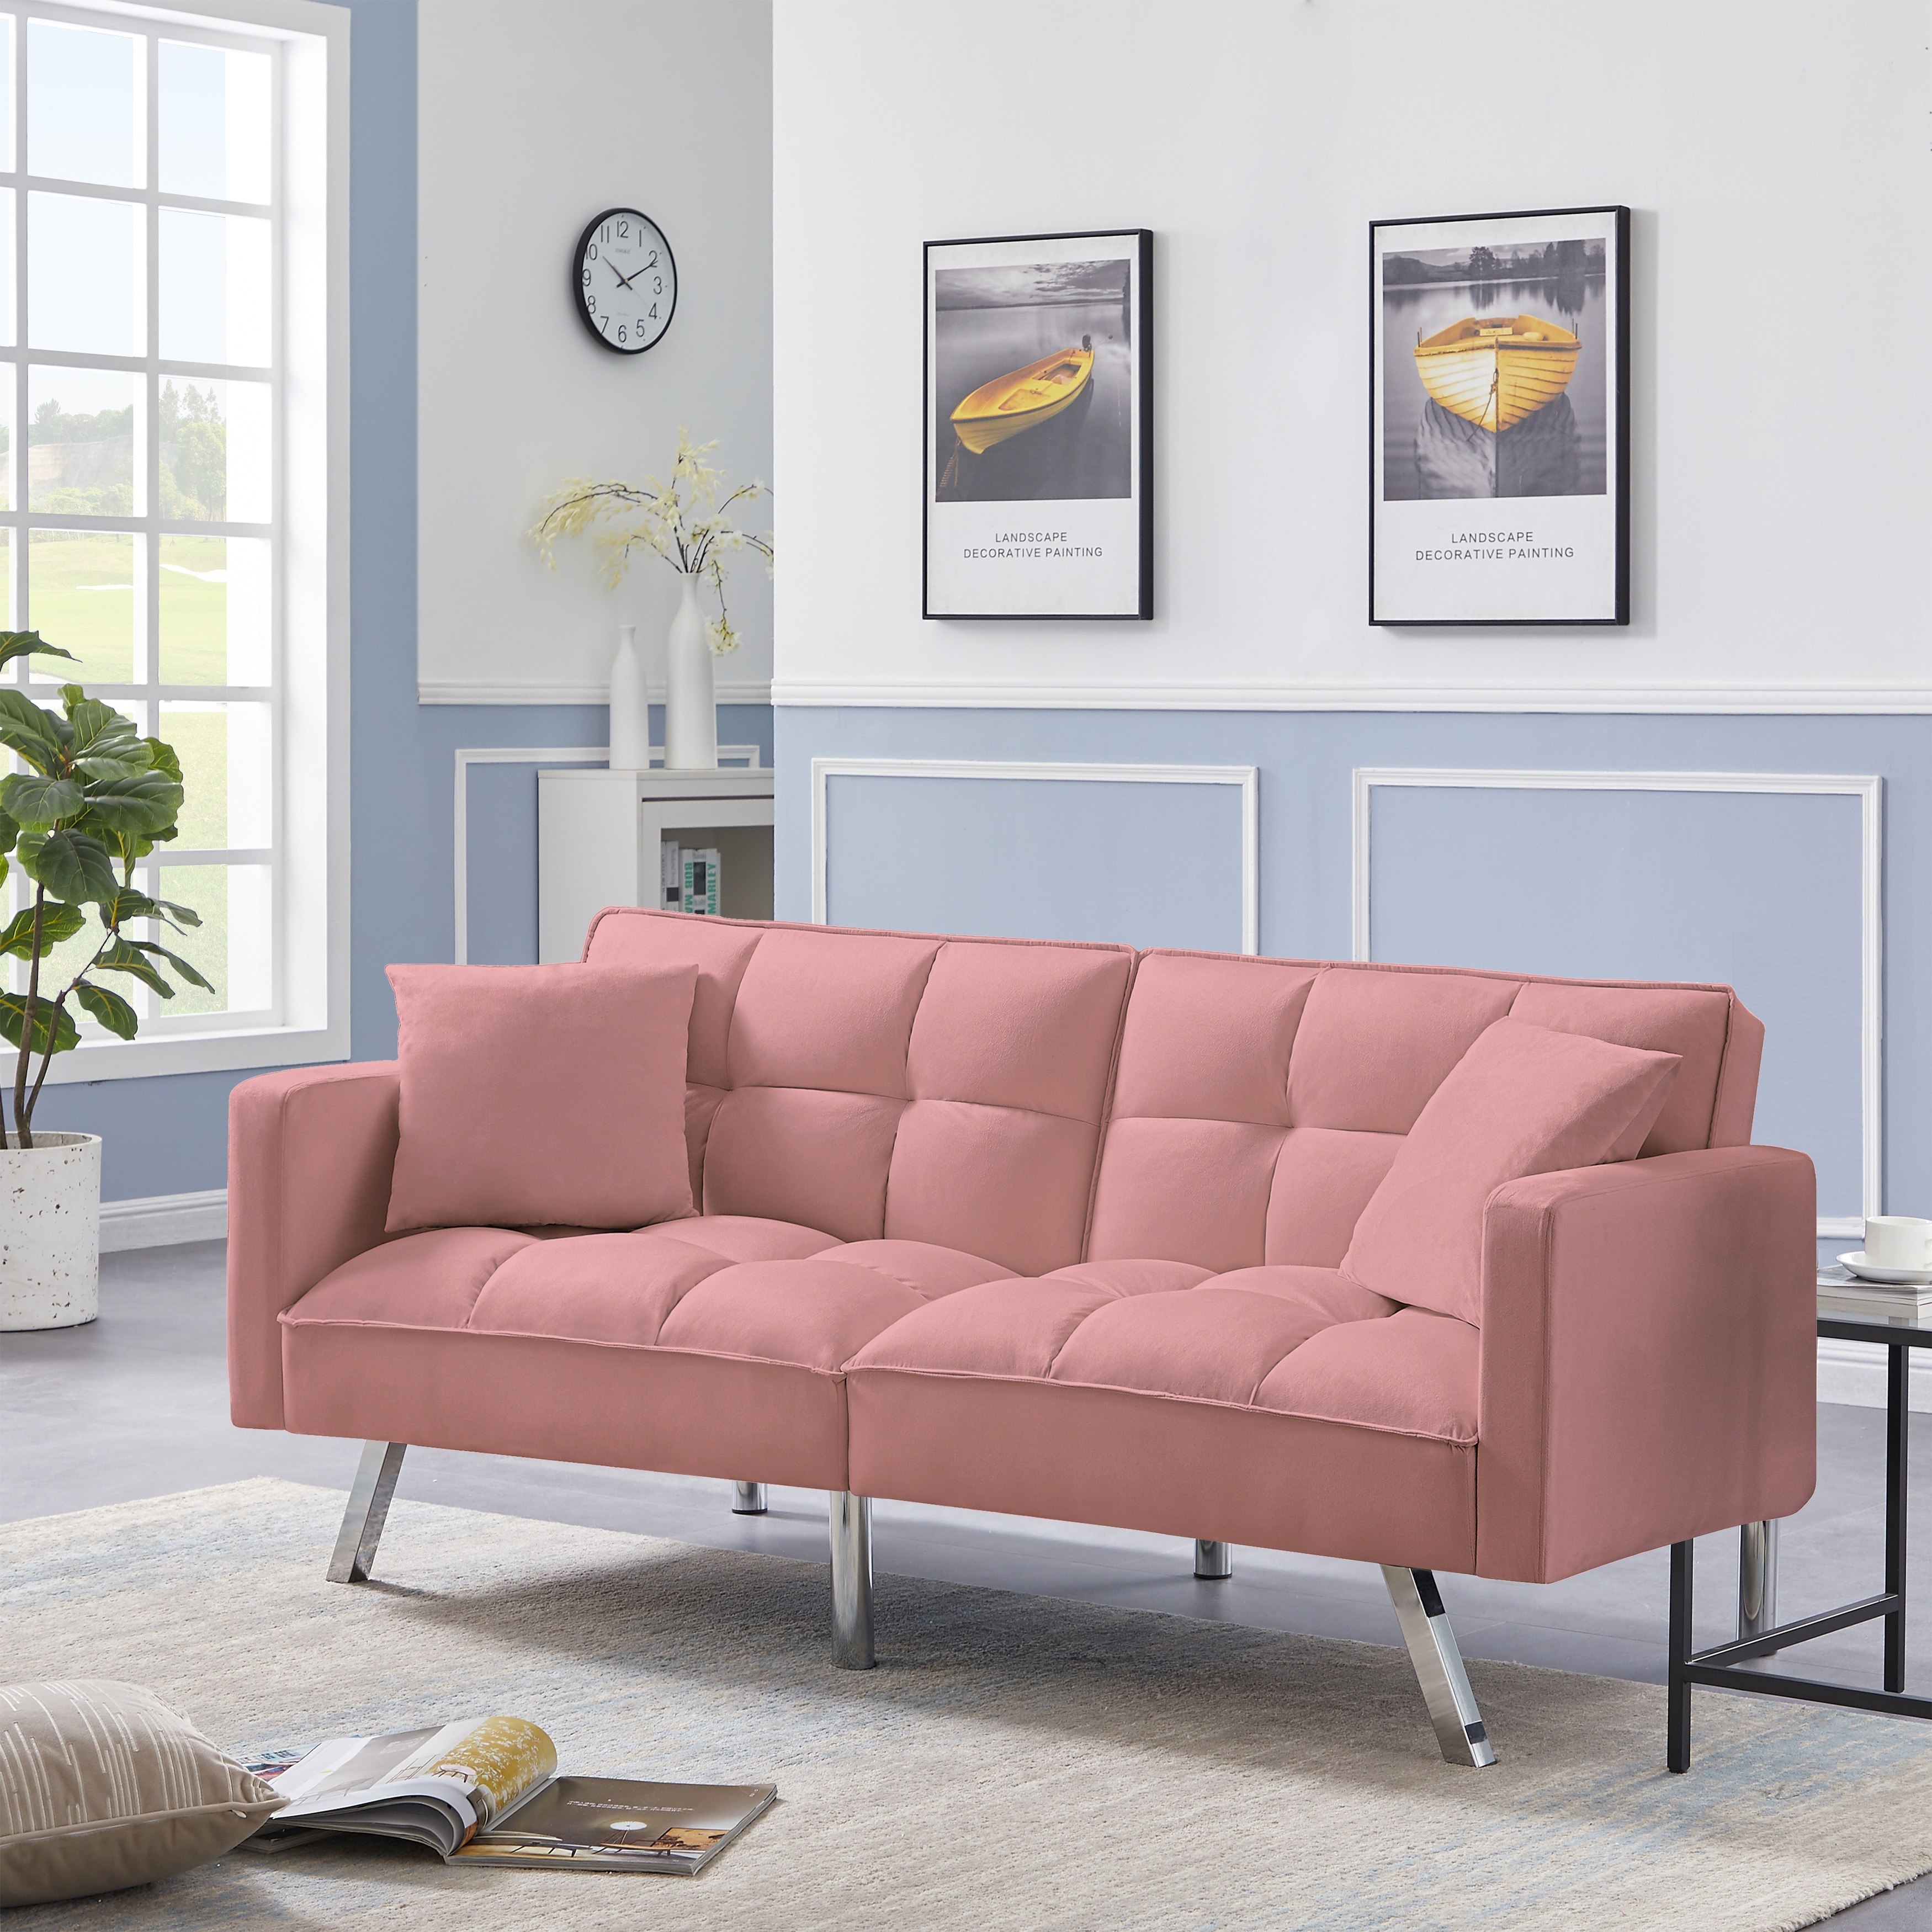 Plush Tufted Velvet Splitback Living Room Futon Brown Sleeper Couch w/ Pillows 